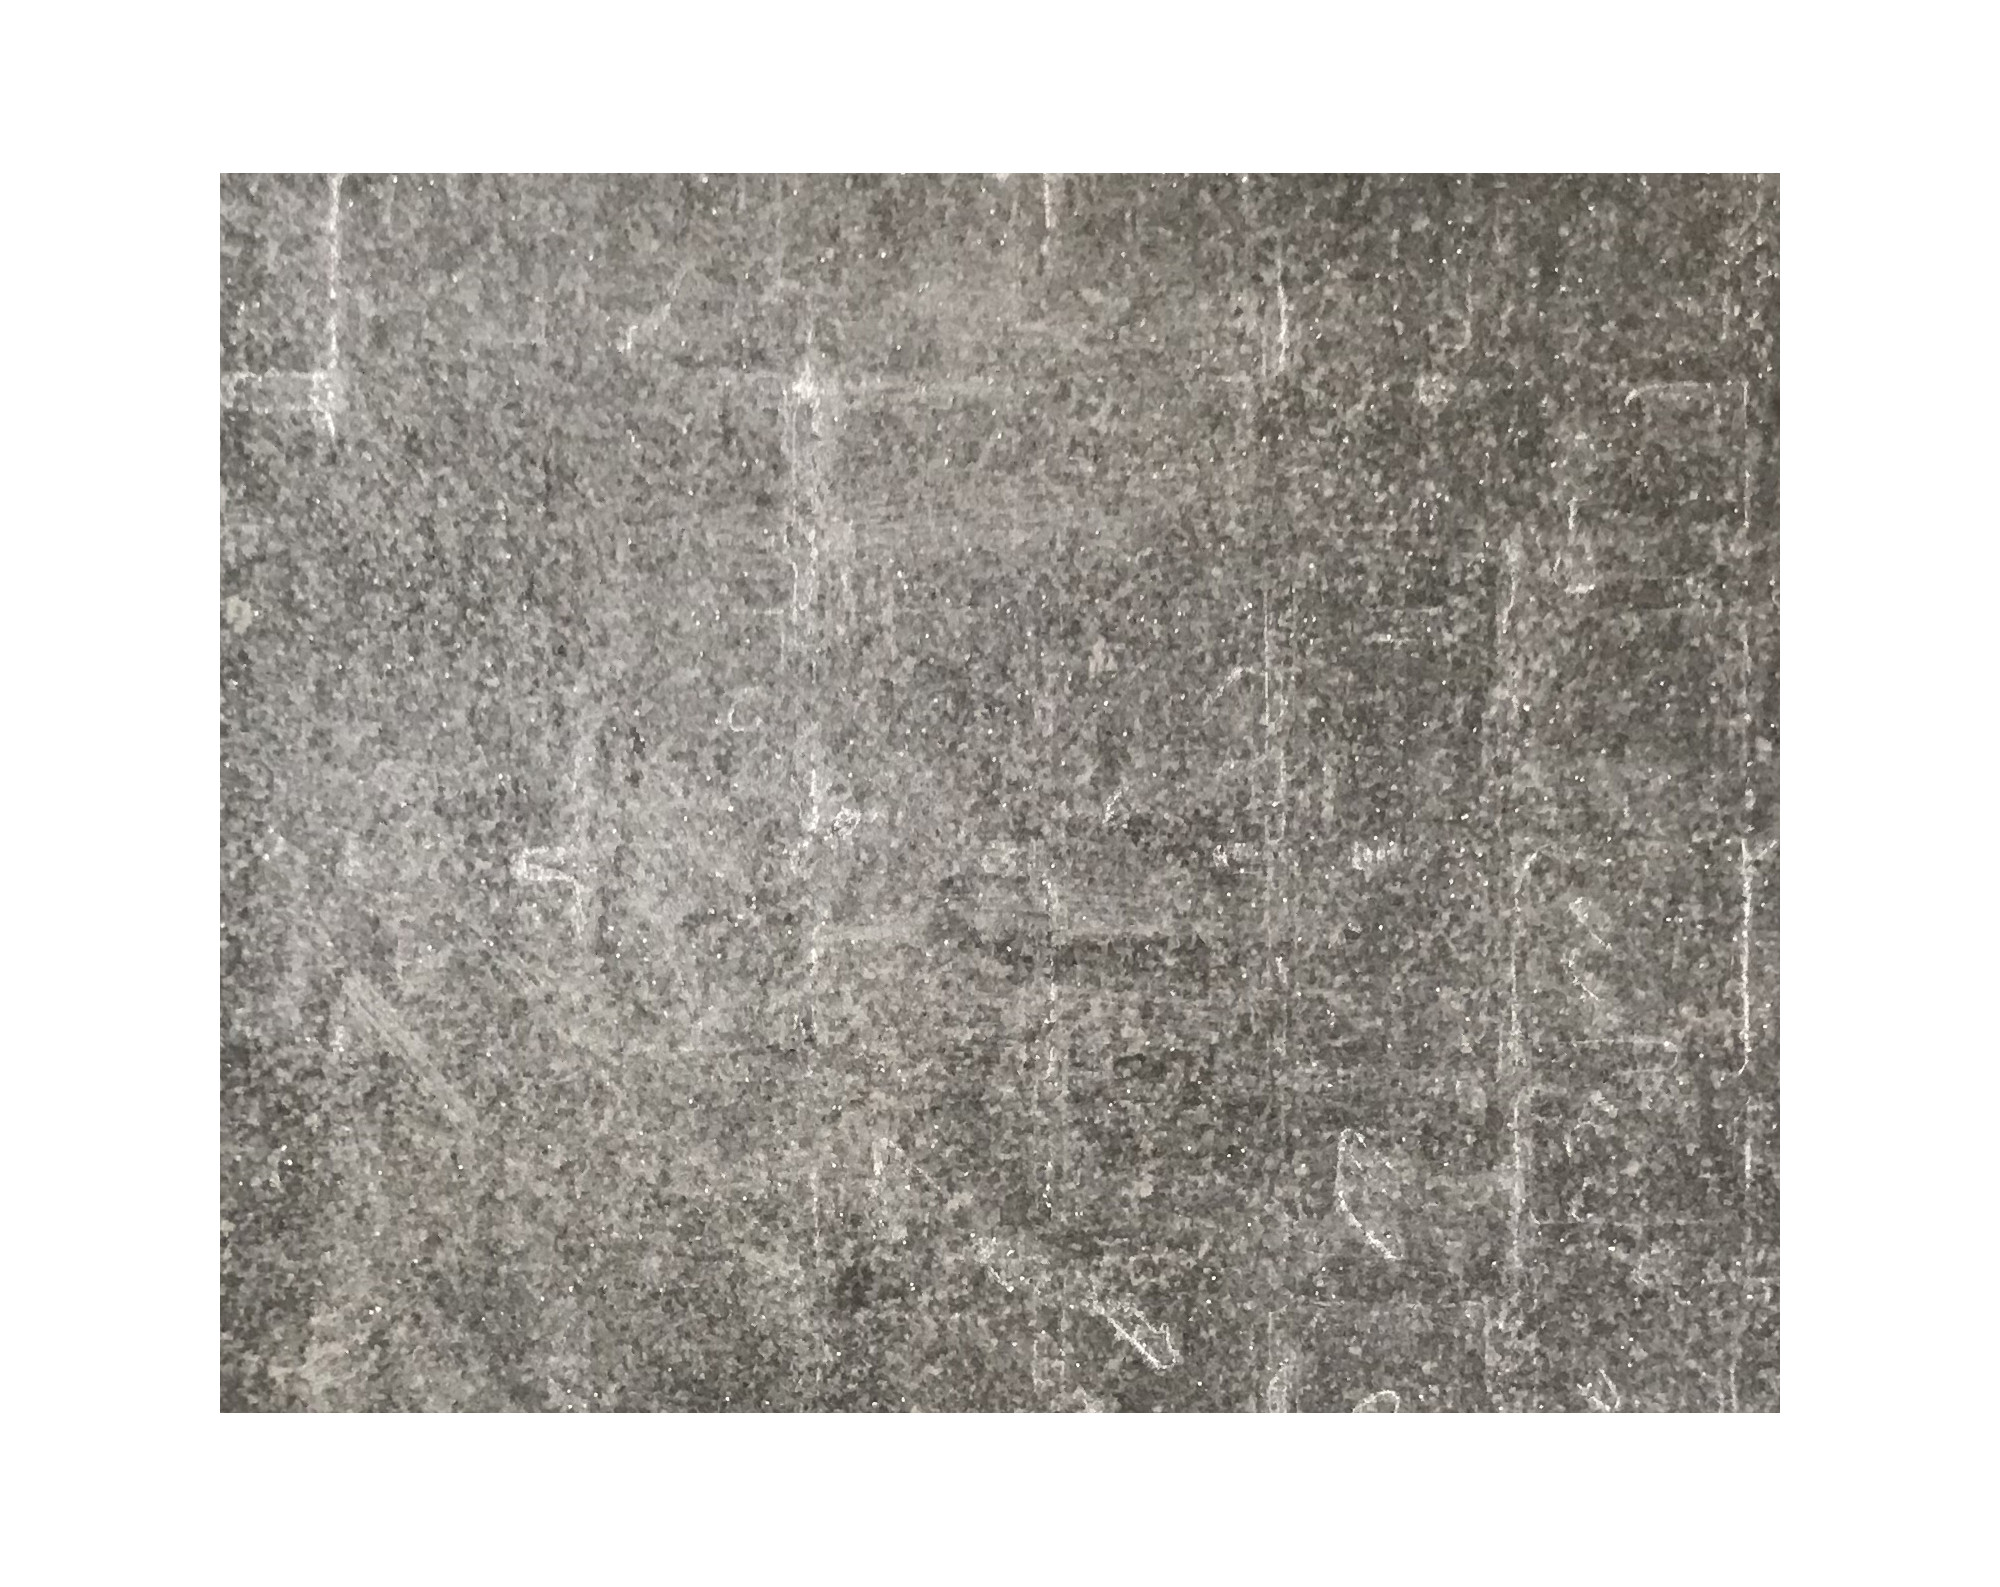 Harmo roc maranelloset, keramiek-serie, ovaal d:3,50mx6,20m, zand zwart, keramisch porselein